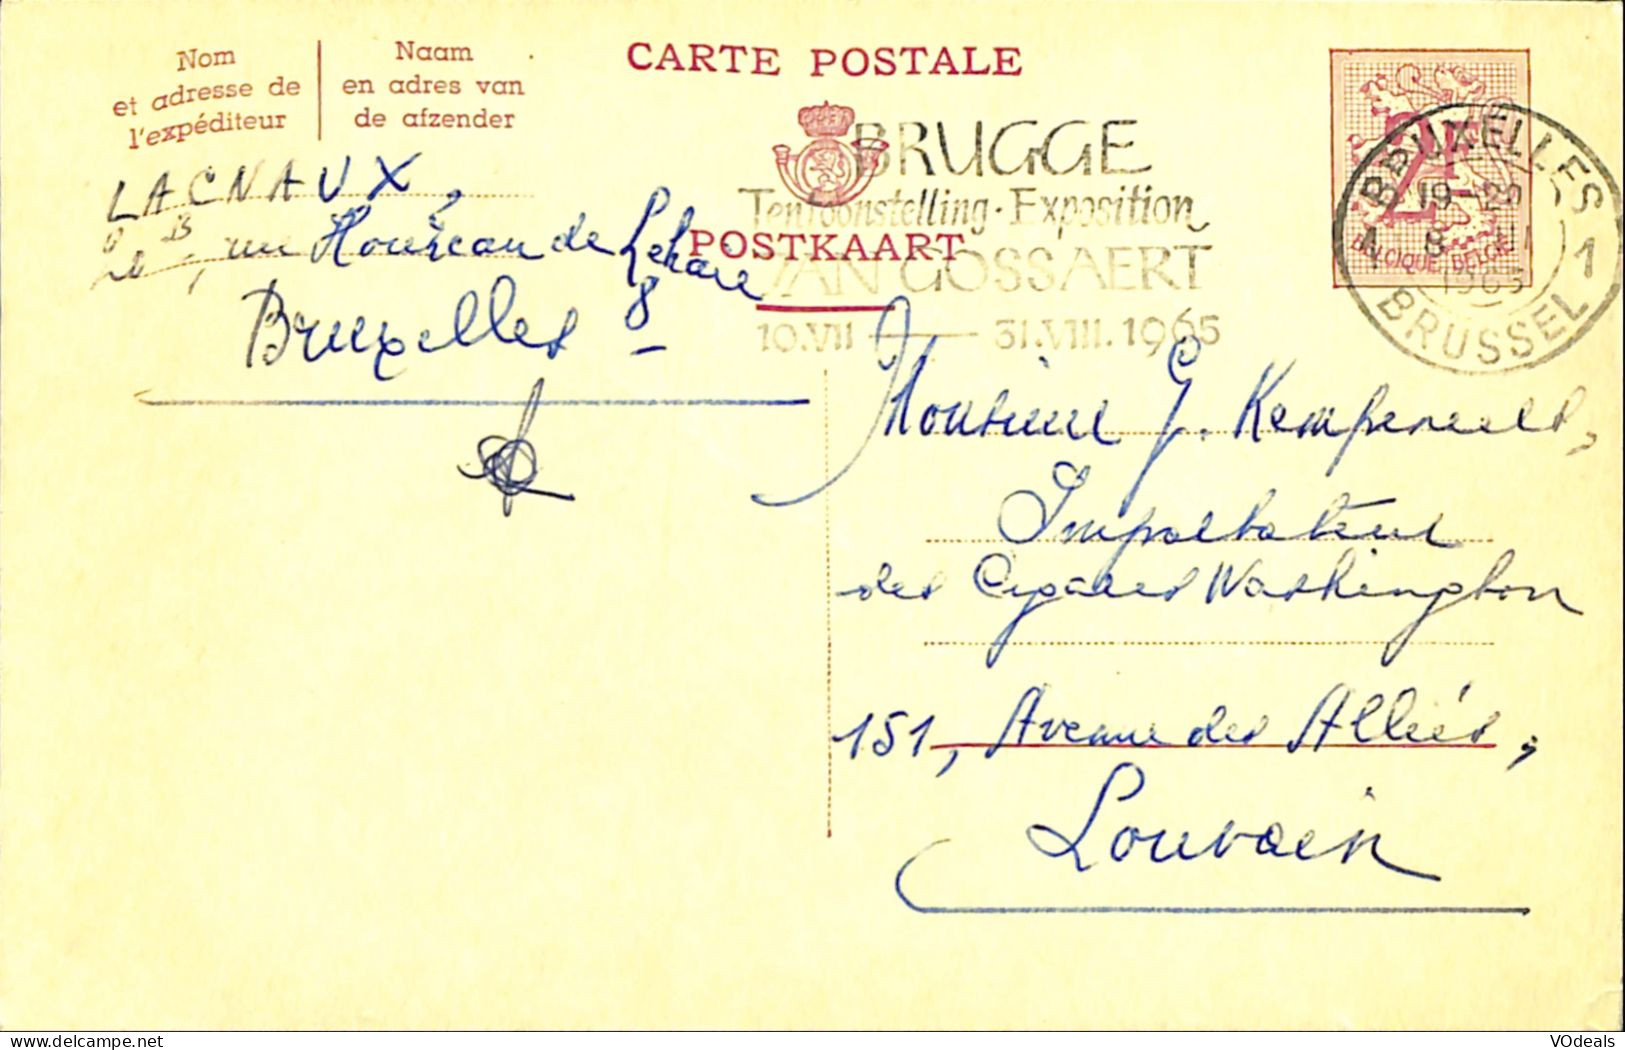 Belgique - Carte Postale - Entier Postal - 1965 - Bruxelles à Louvain - 2 Francs - Cartoline 1951-..